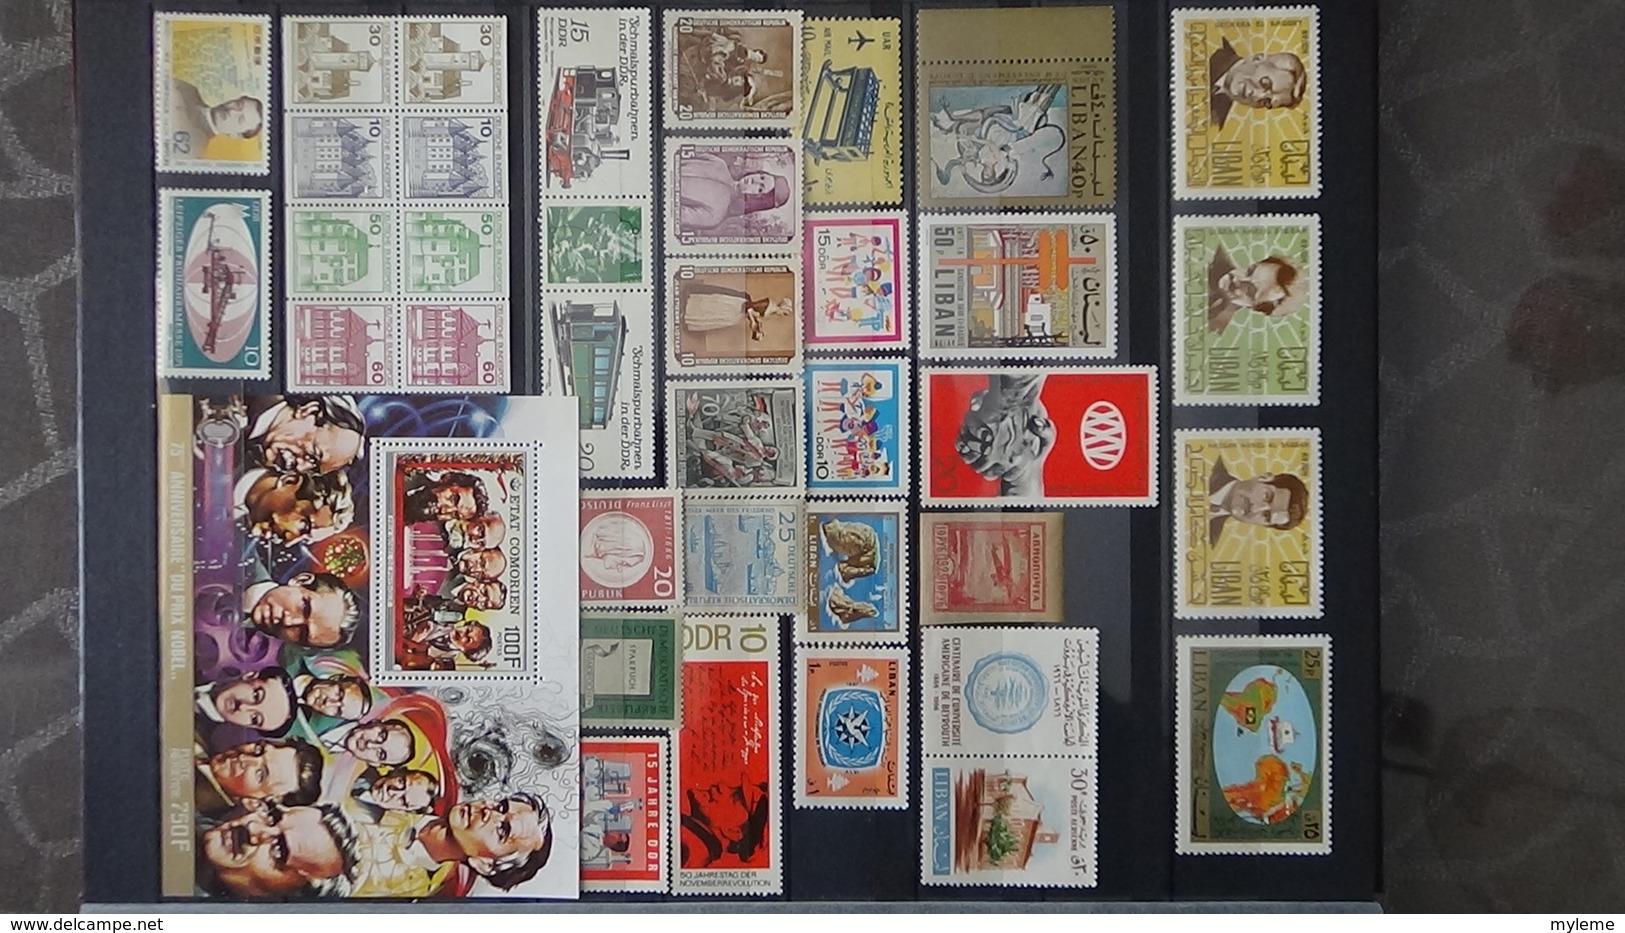 Très bon lot de timbres et blocs de divers pays dont bloc souvenir N° de France ** Cote des blocs + de 400 euros.